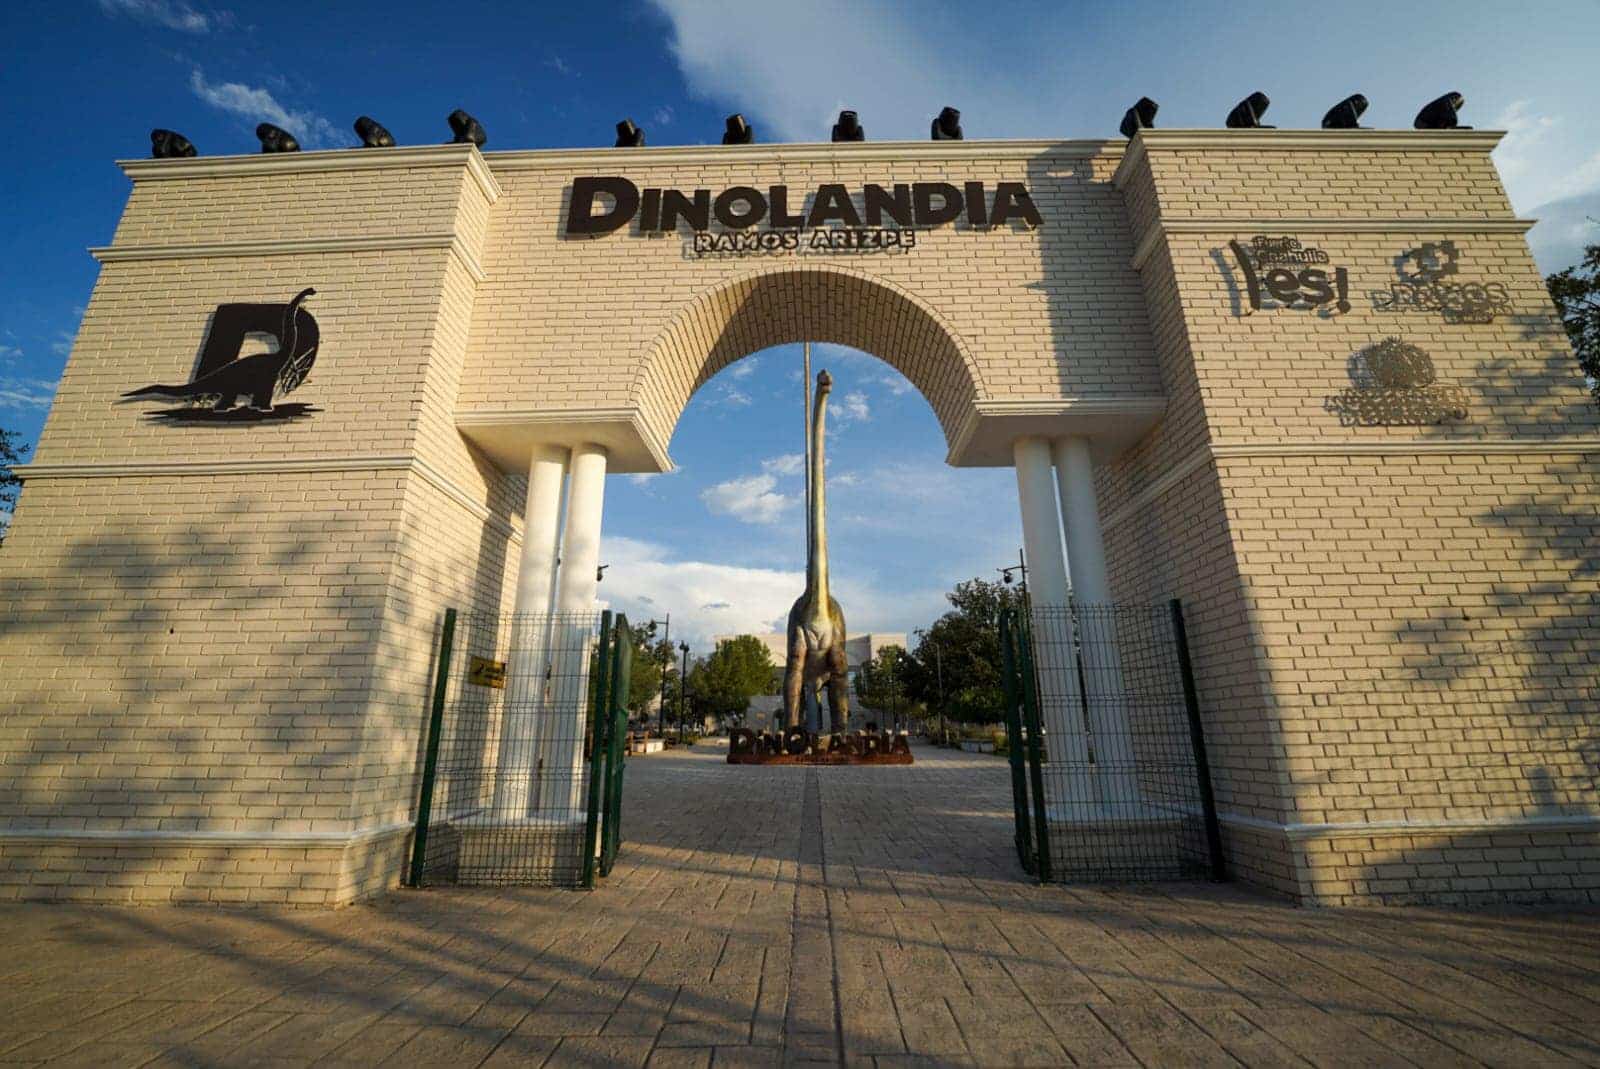 Dinolandia, conócelo y vive una experiencia jurásica en Coahuila